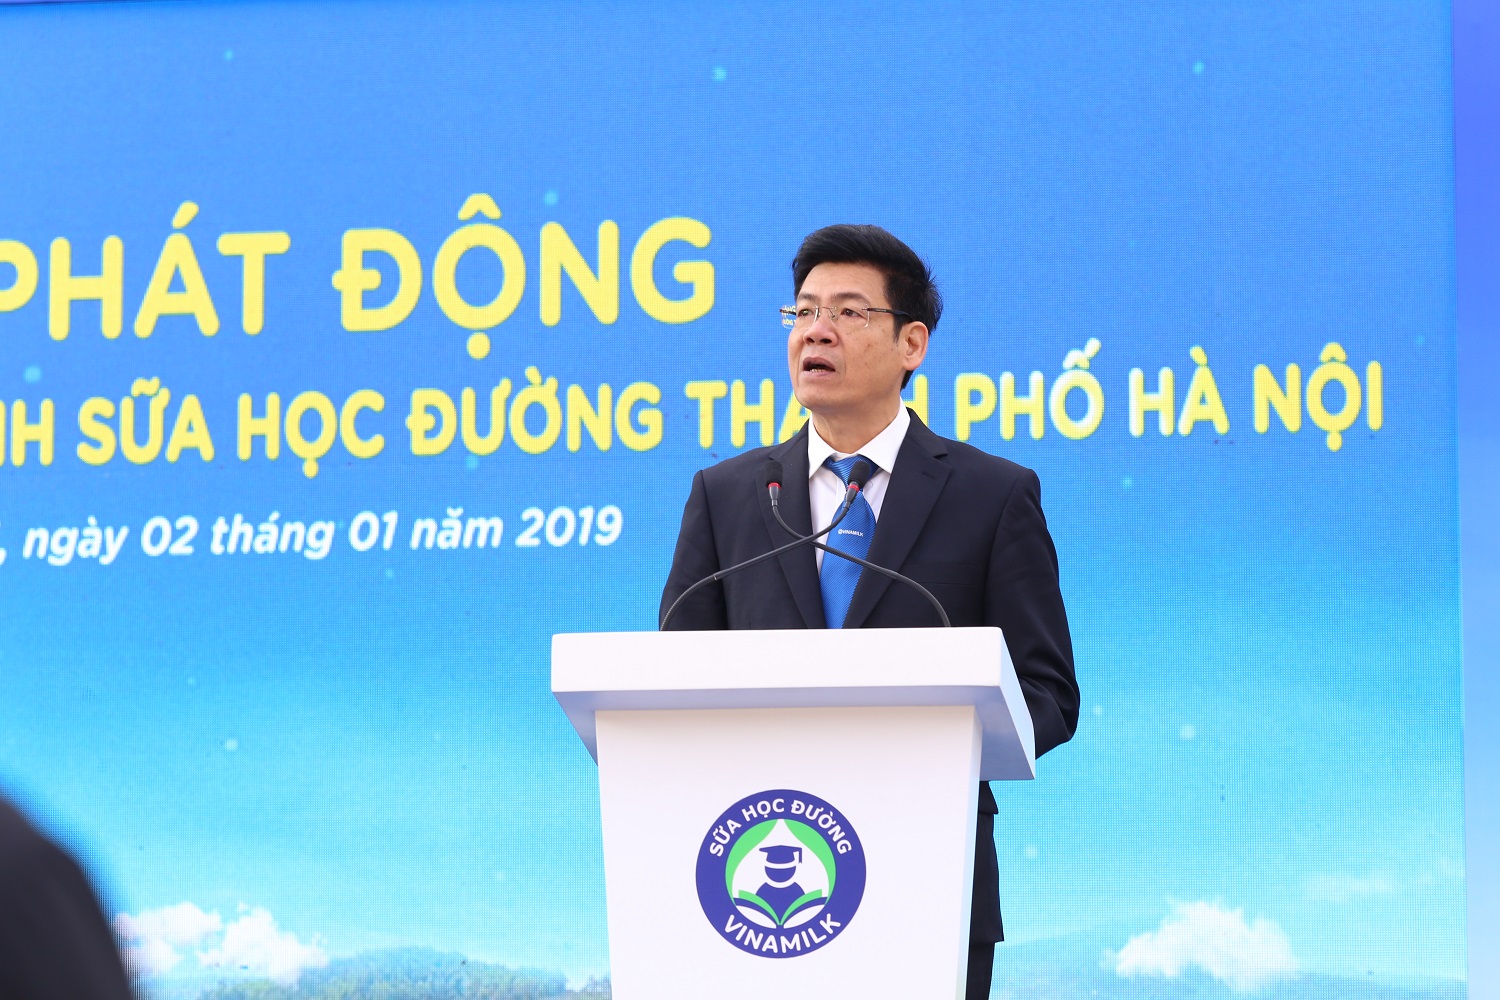 Ông Nguyễn Hồng Sinh - Giám đốc kinh doanh nội địa của Vinamilk phát biểu tại sự kiện.